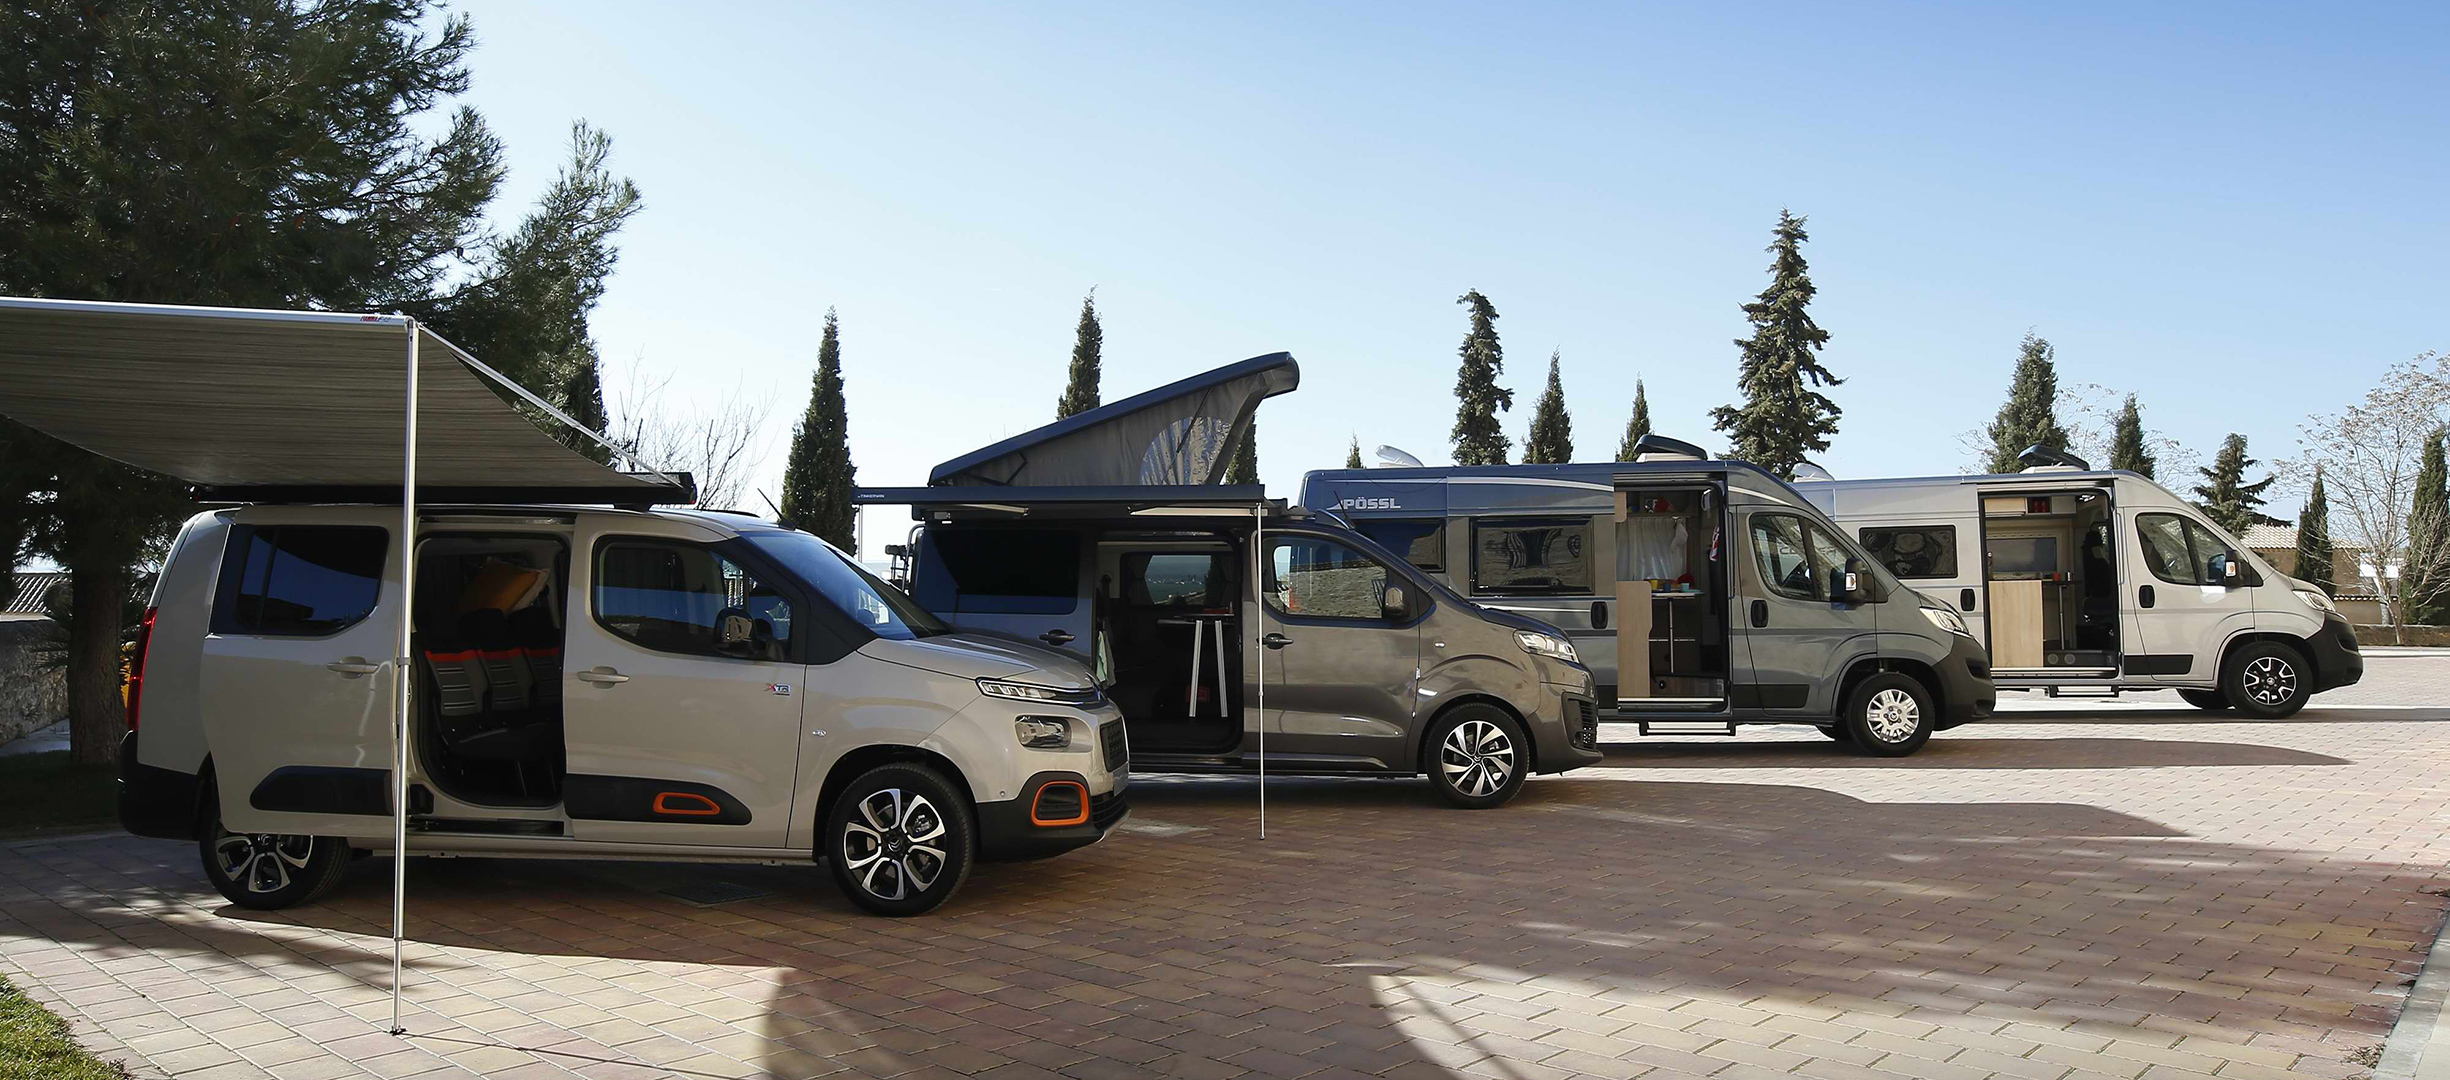 Citroën presenta sus versiones Camper